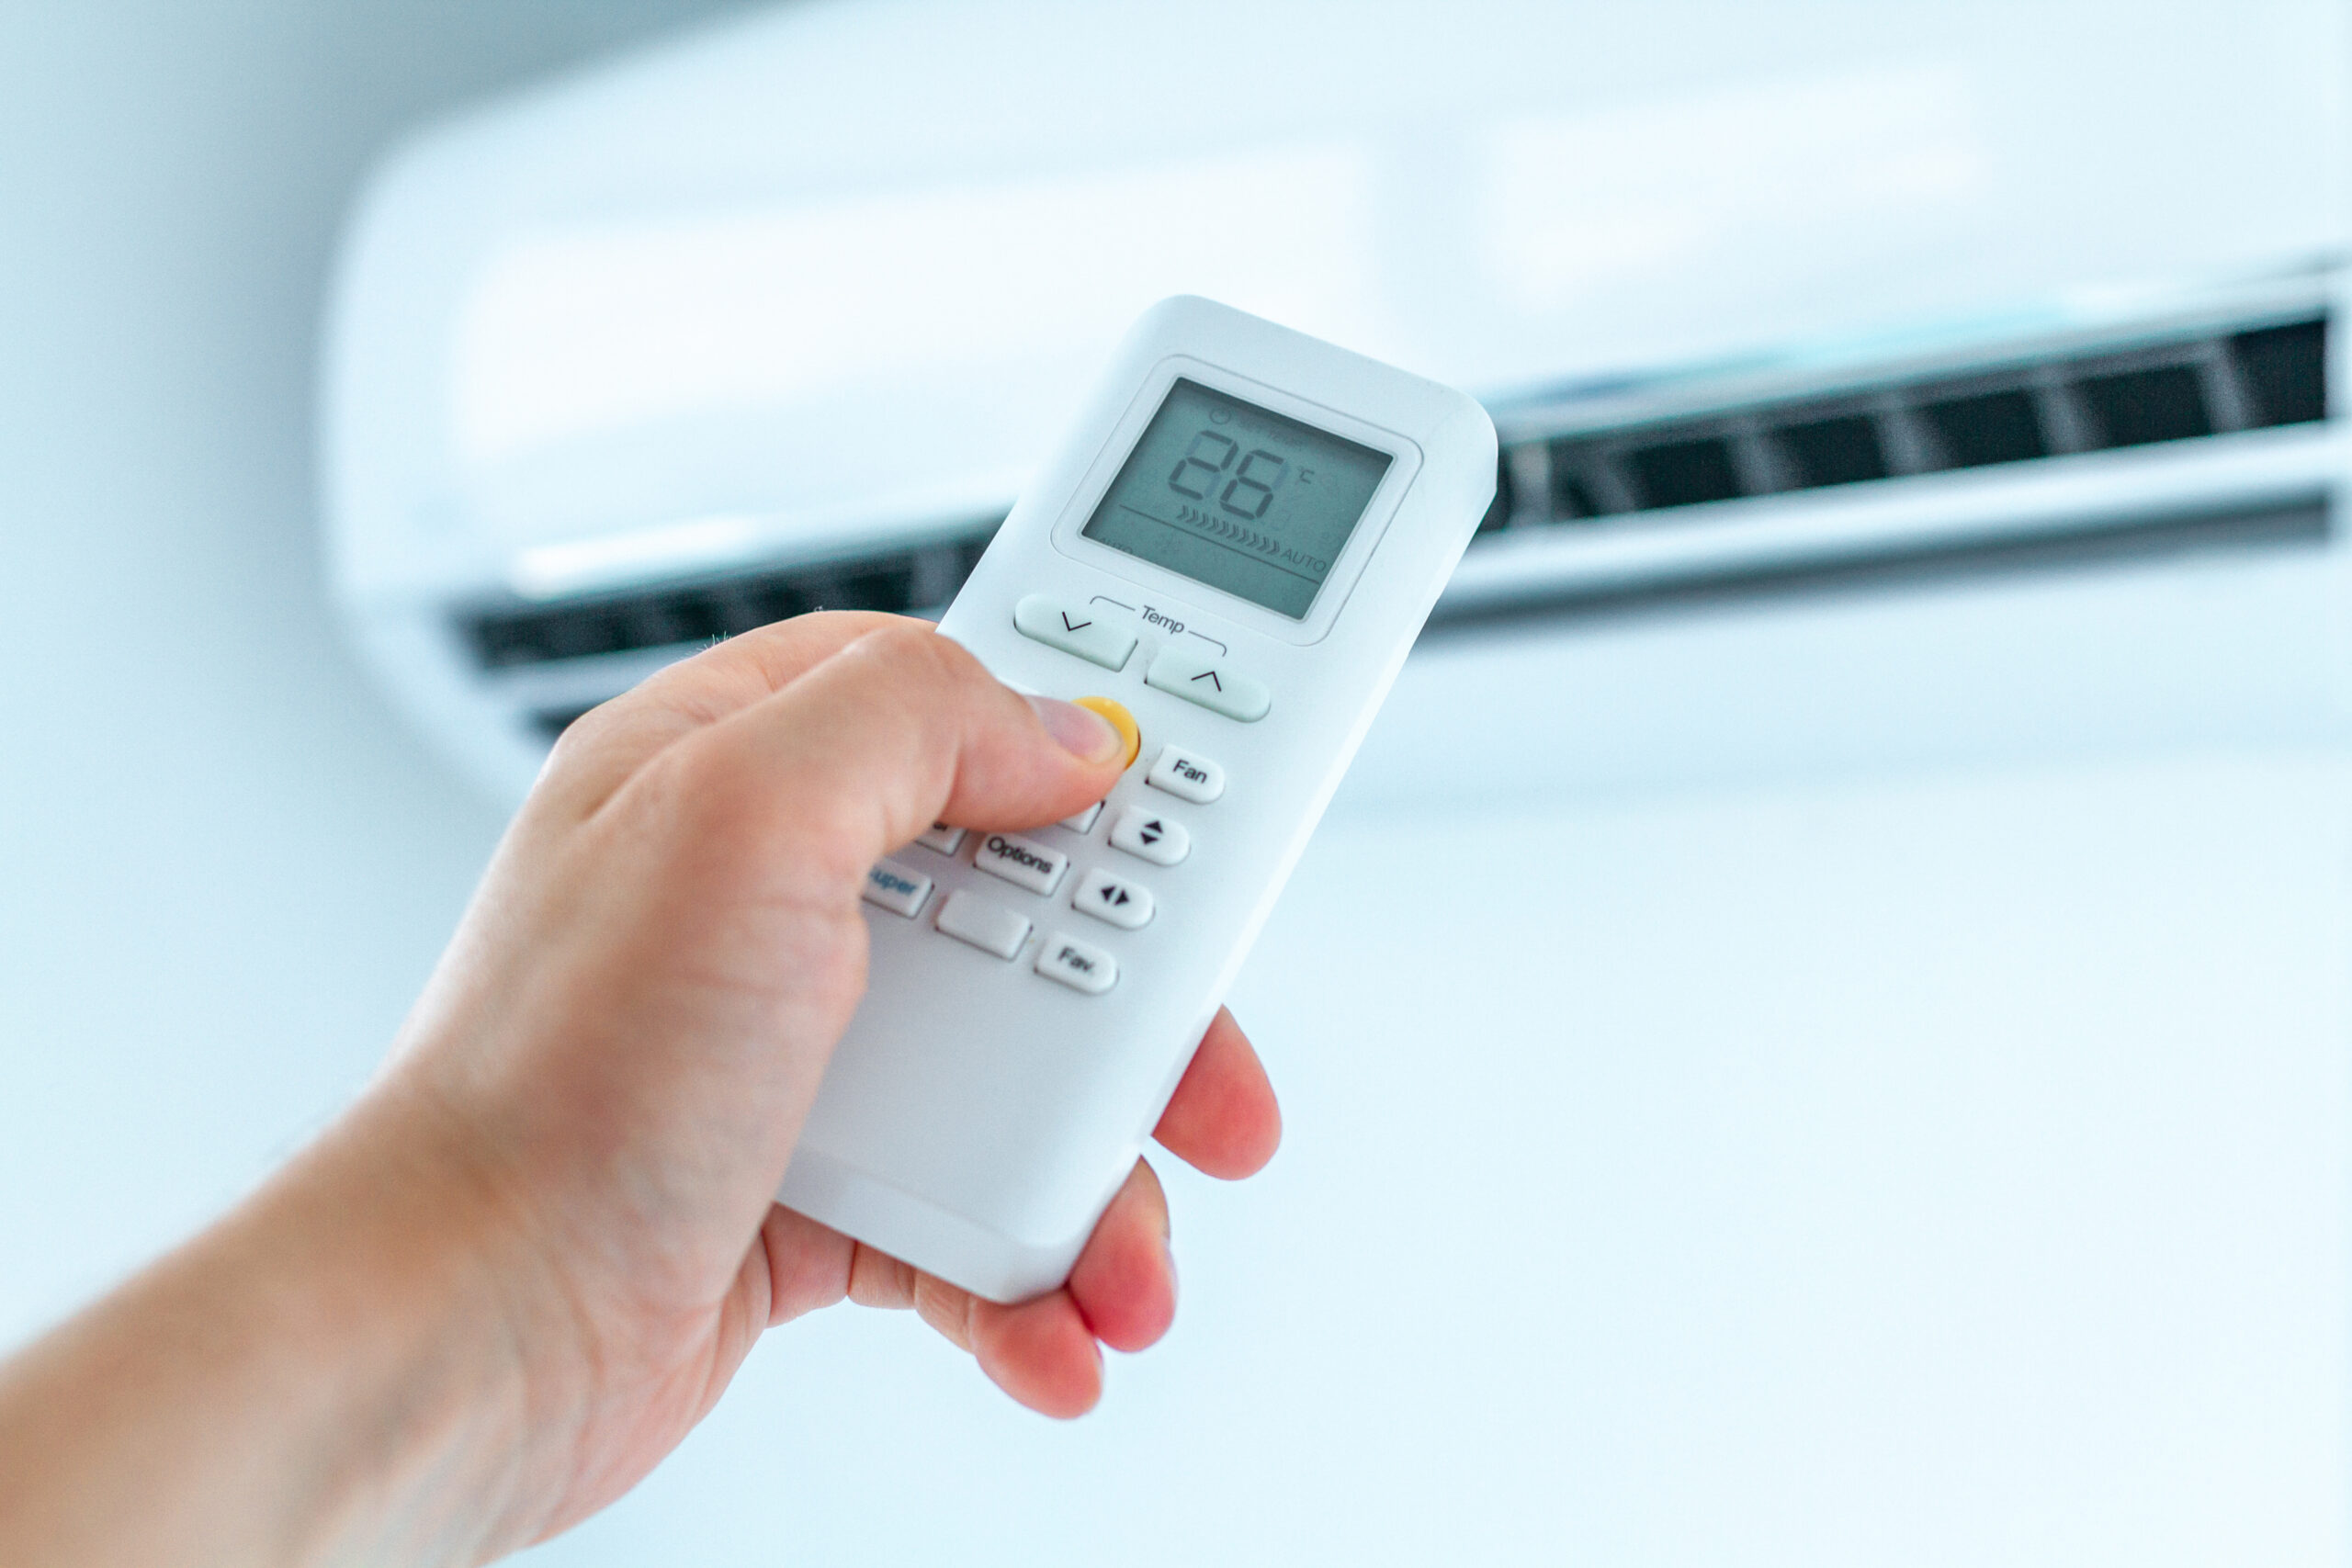 Réglage de la température du climatiseur avec télécommande dans la pièce de la maison.